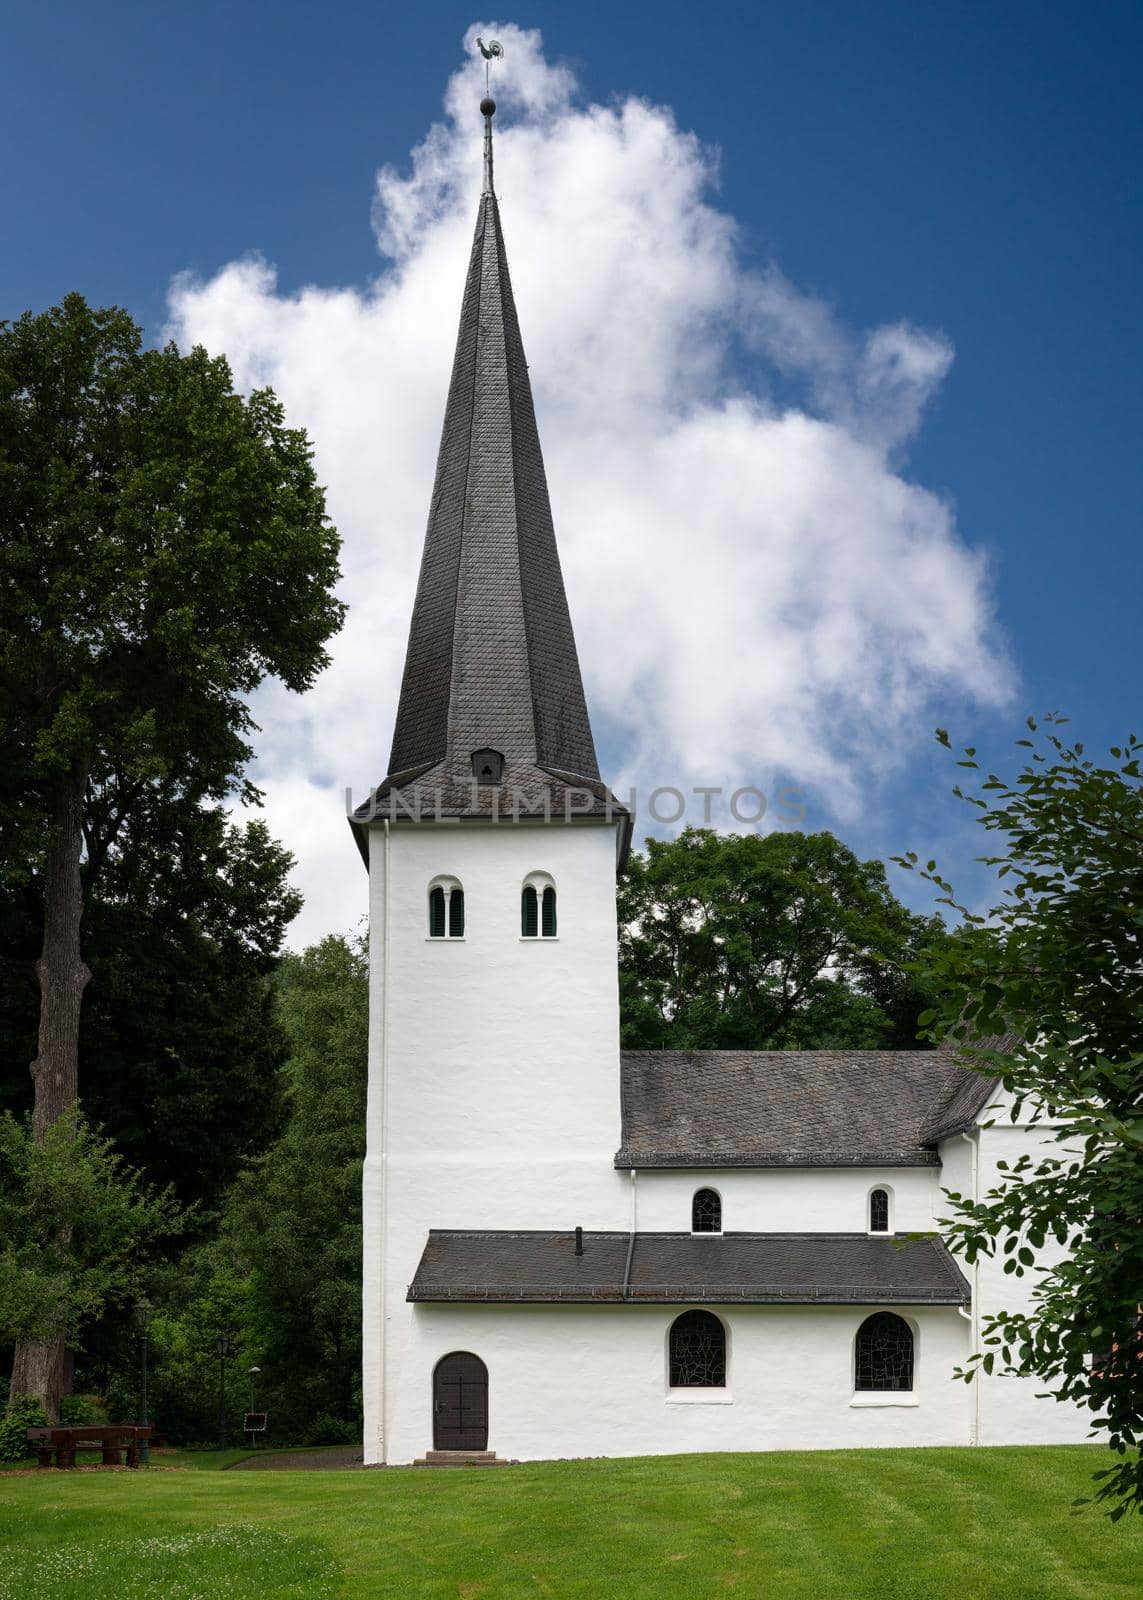 Medieval church of Wiedenest, Bergneustadt, Bergisches Land, Germany